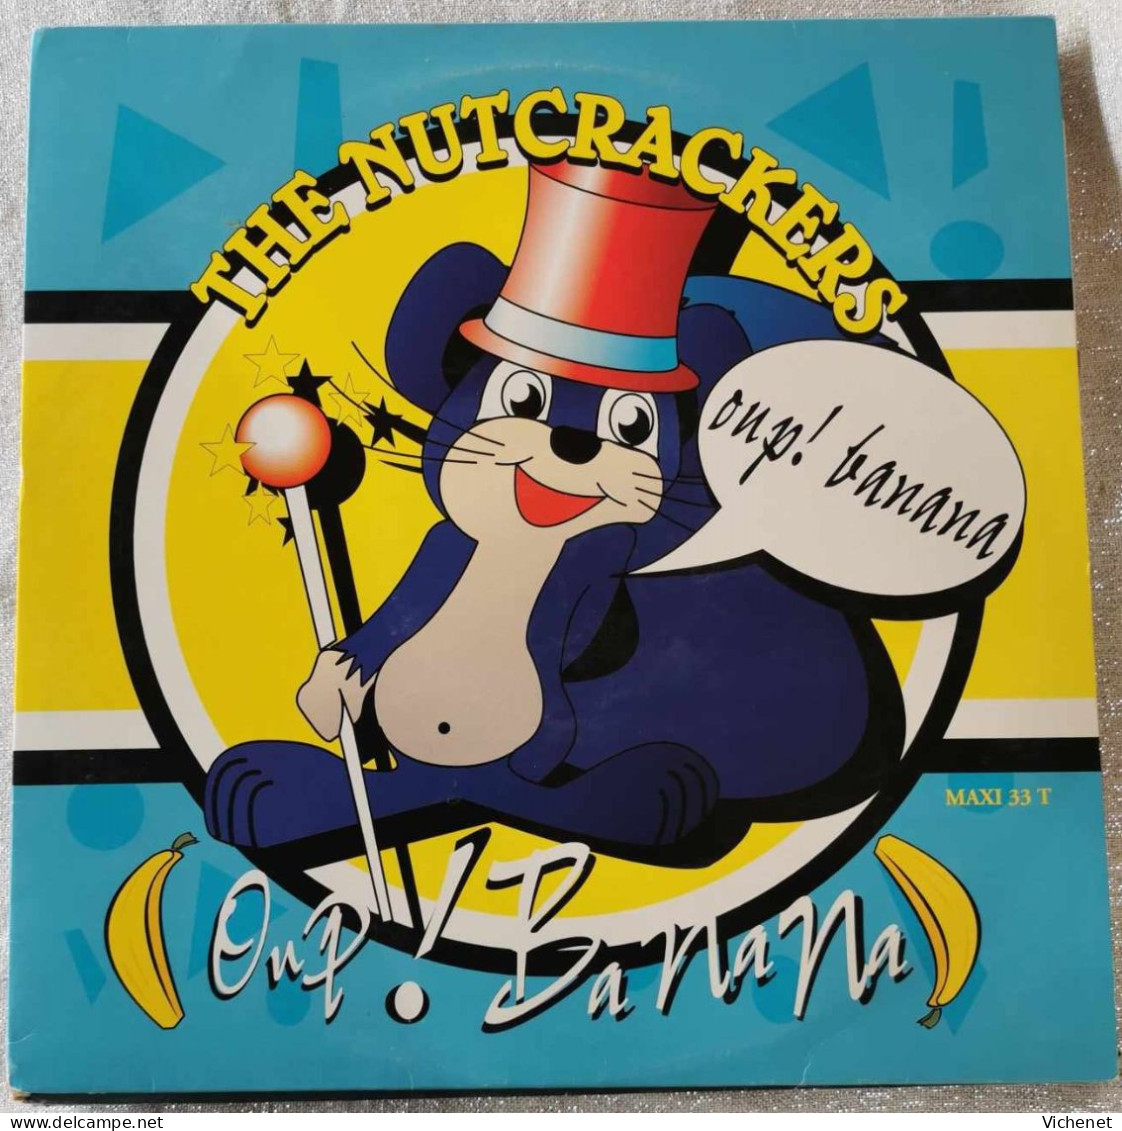 The Nutcrackers – Oup! Banana - Maxi - 45 Rpm - Maxi-Singles